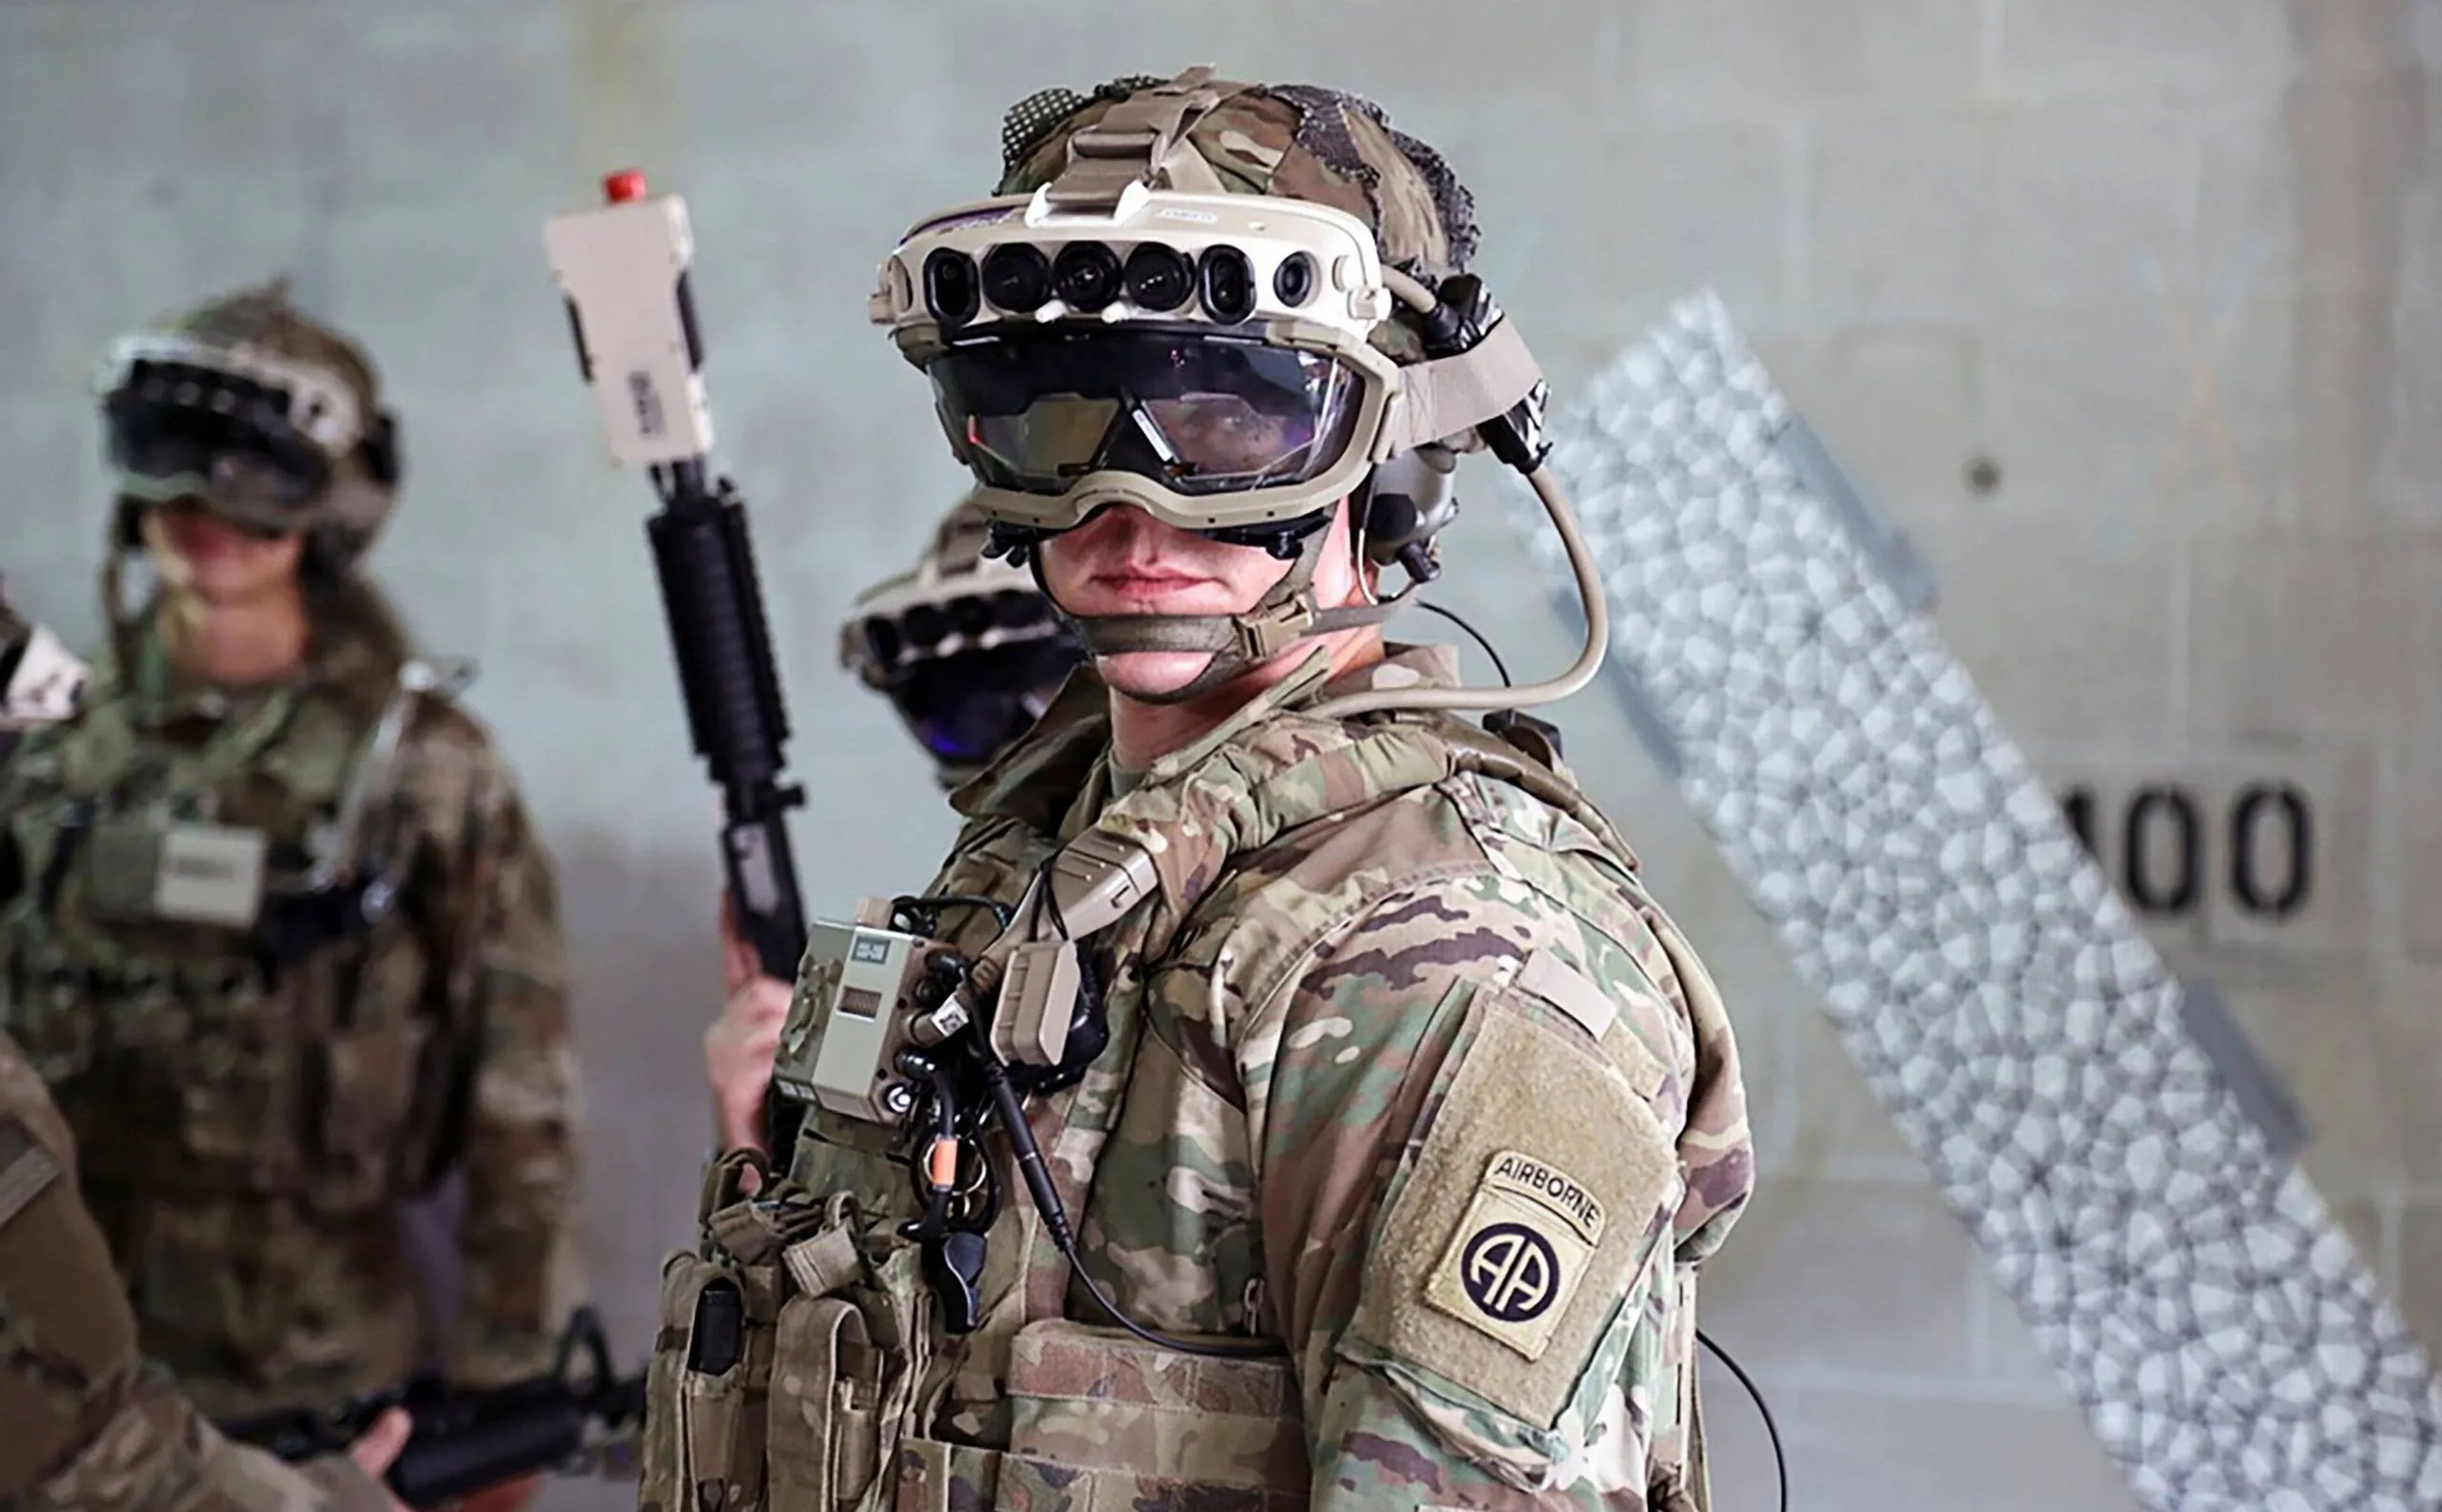 21.000 millones en juego para Microsoft: a soldados no gusta gafas HoloLens | Hoy